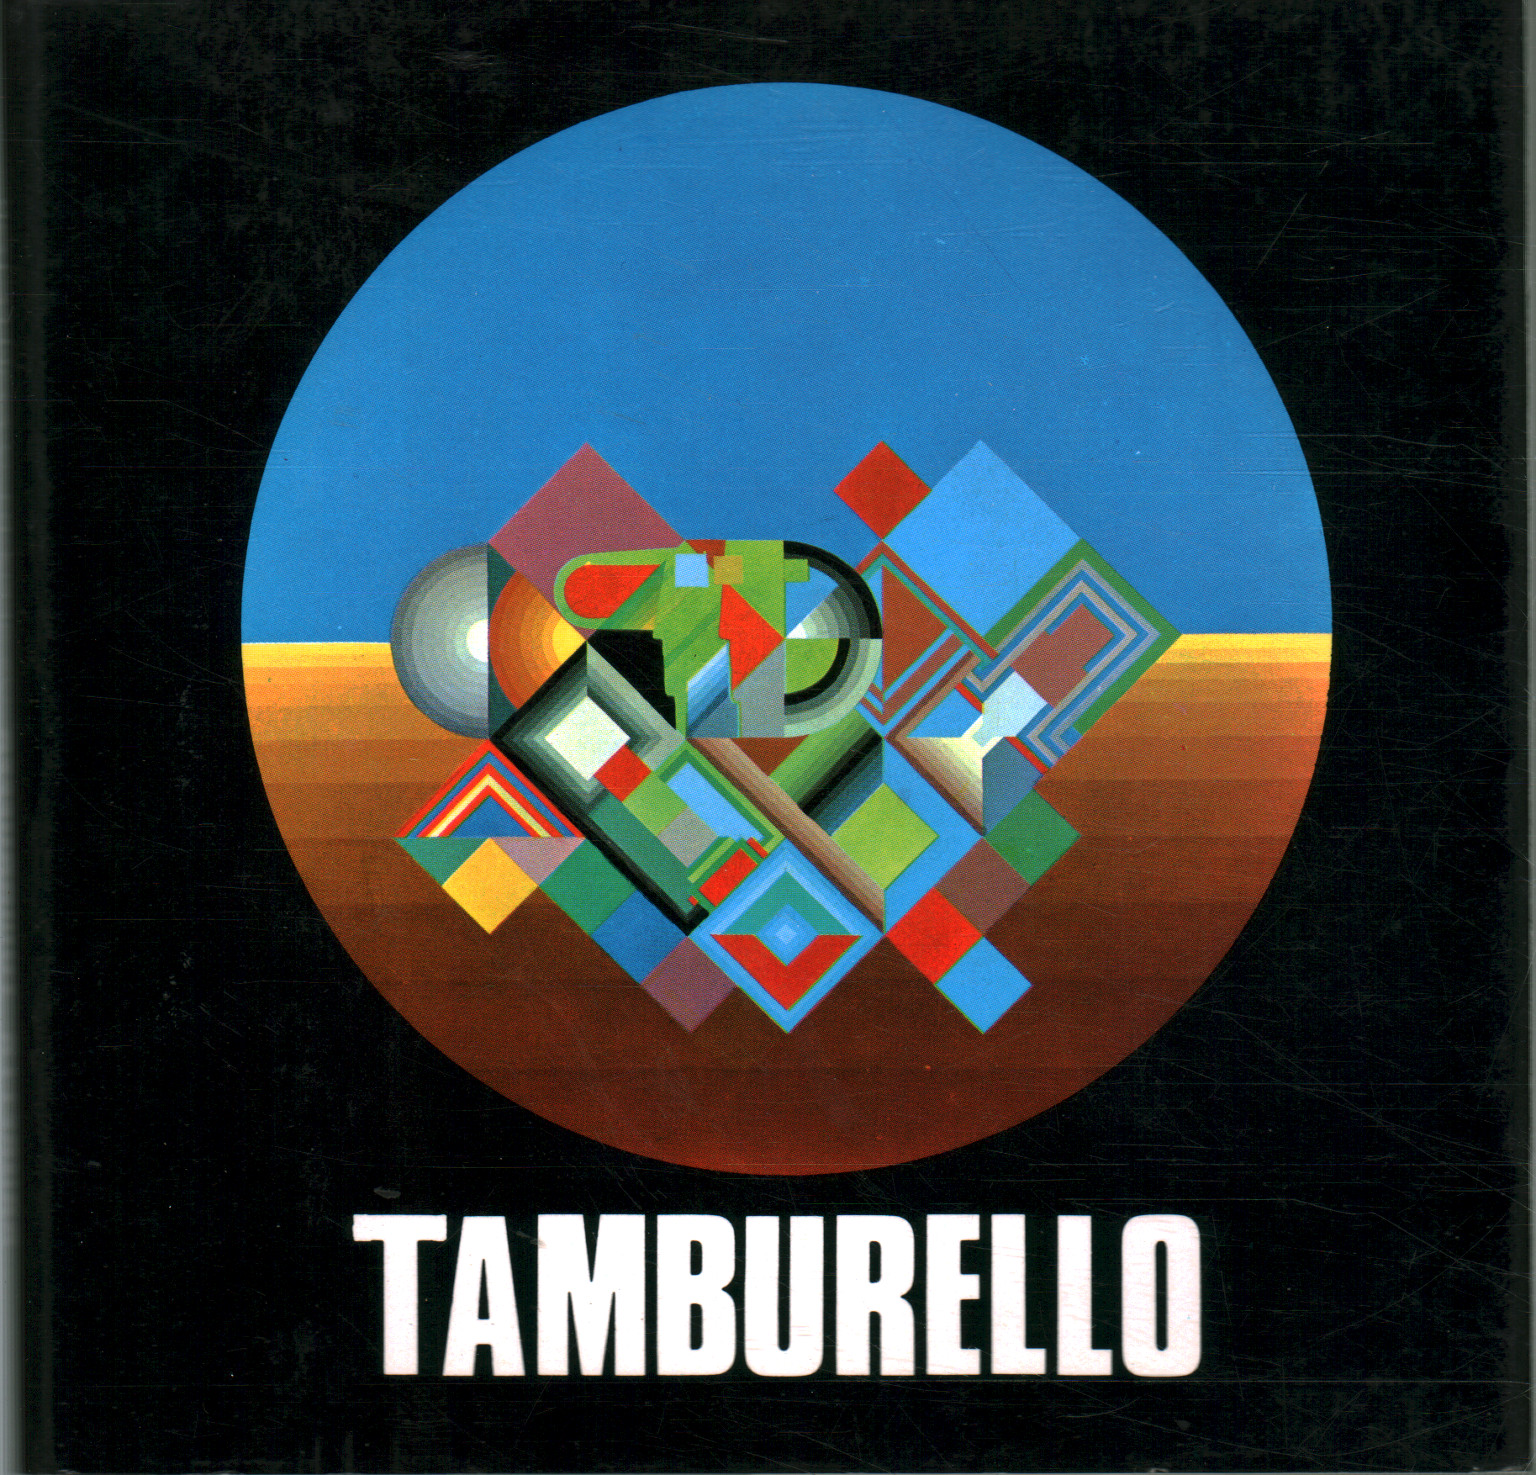 Concetto Tamburello. As seen by a collector, Eugenio Tognon